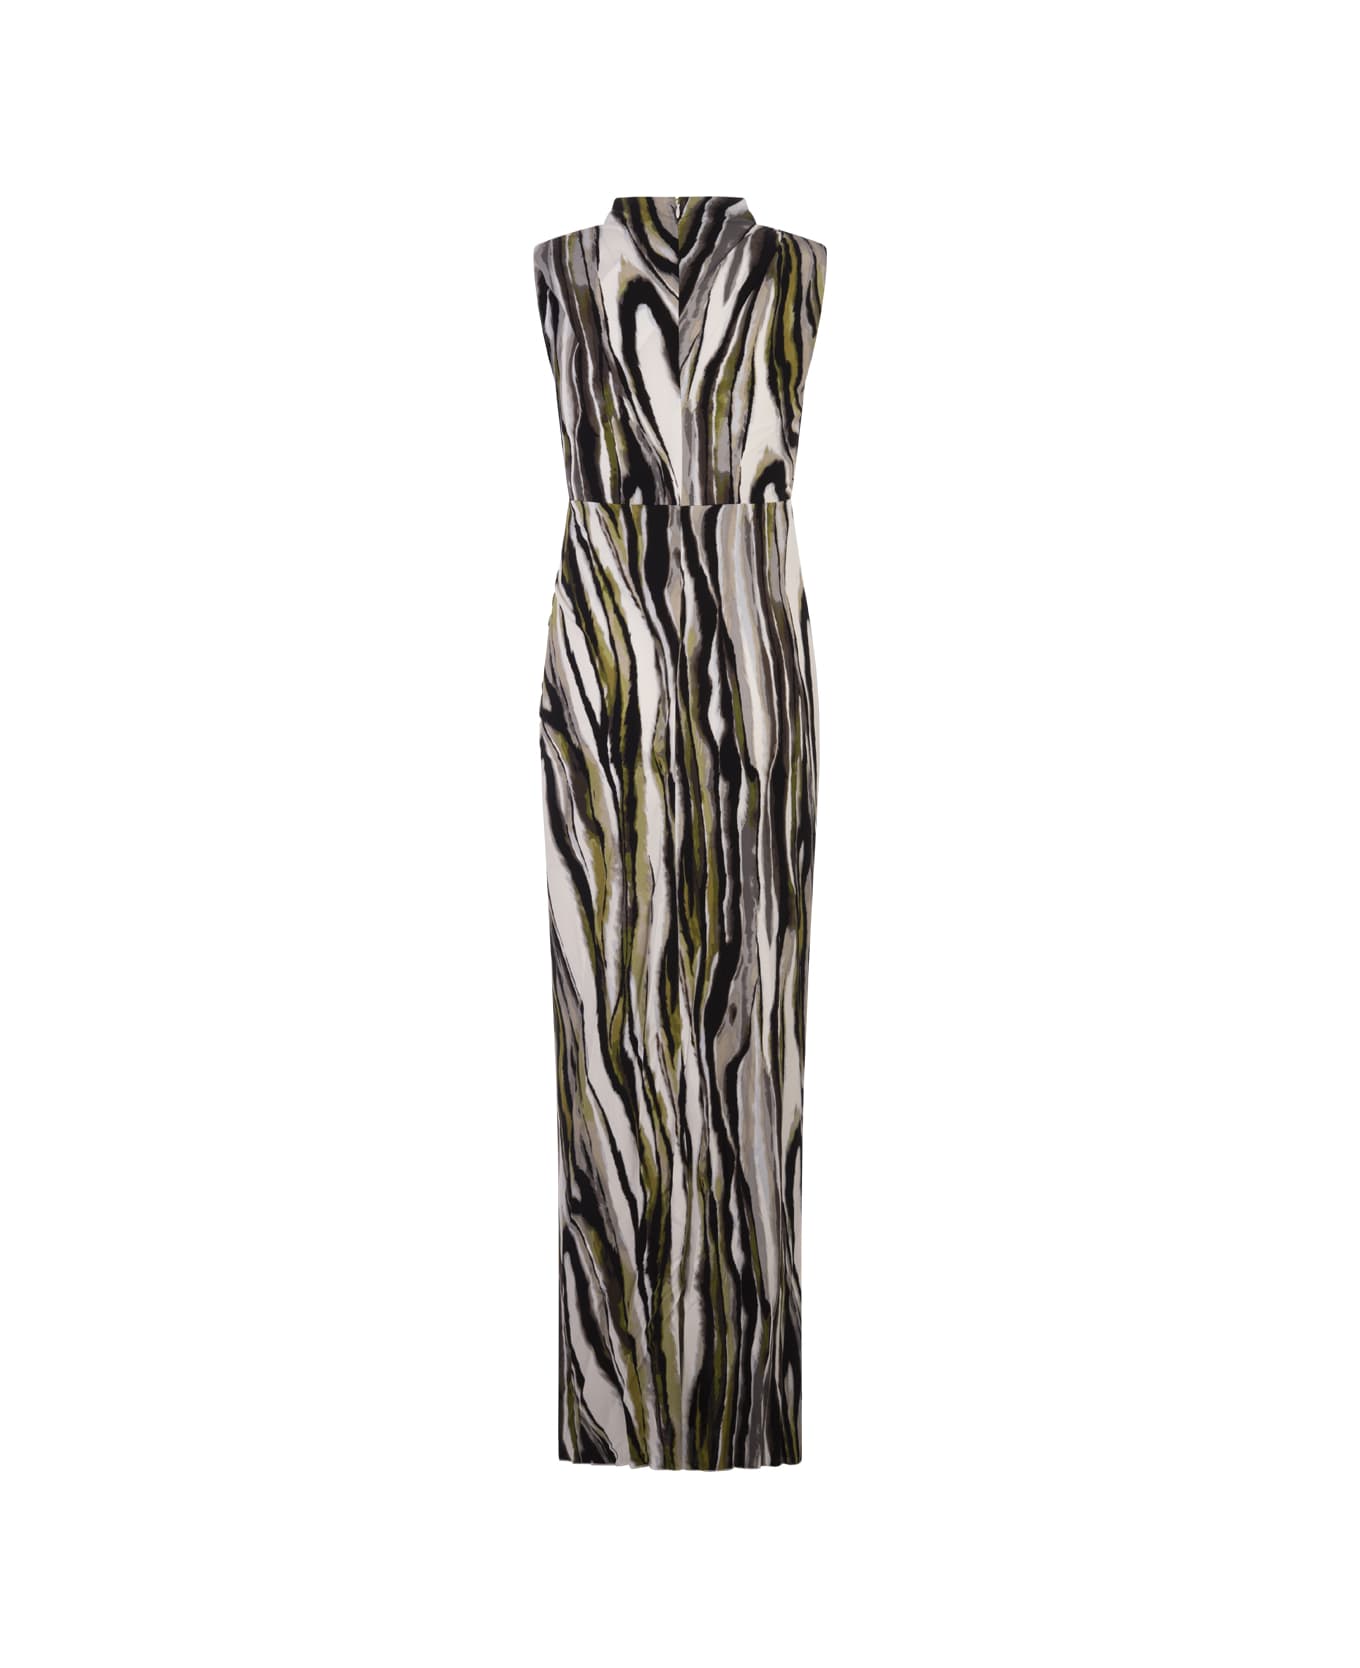 Diane Von Furstenberg Apollo Dress In Zebra Mist - Green